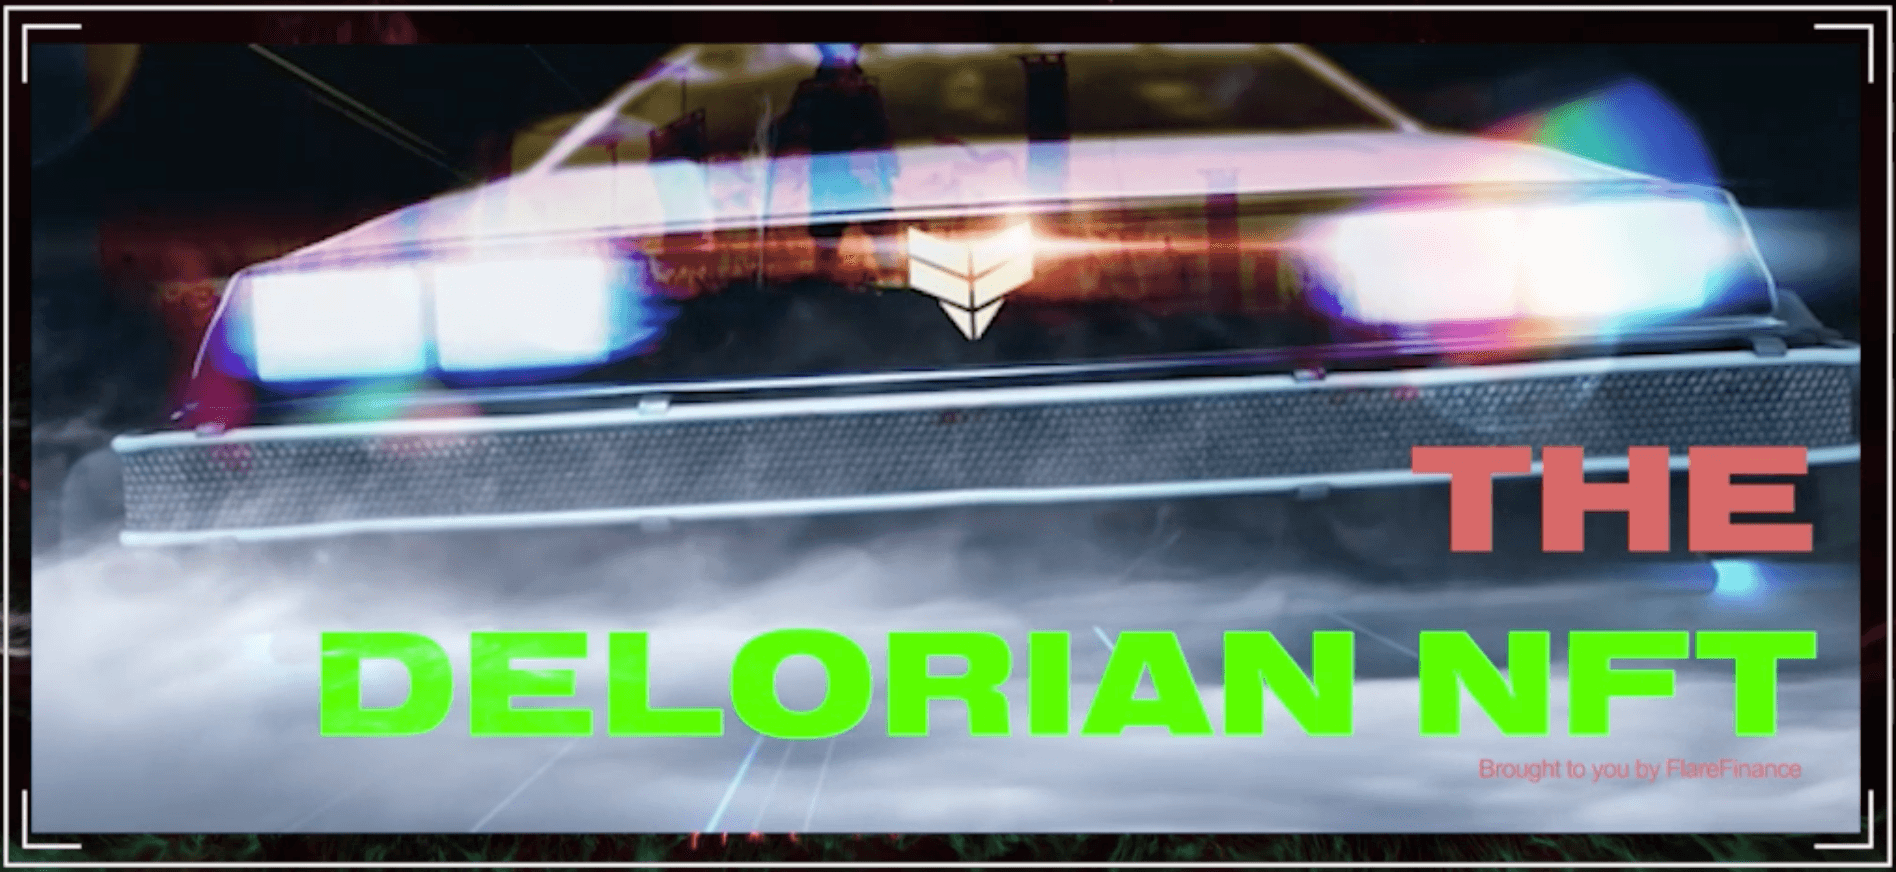 The Delorian NFT